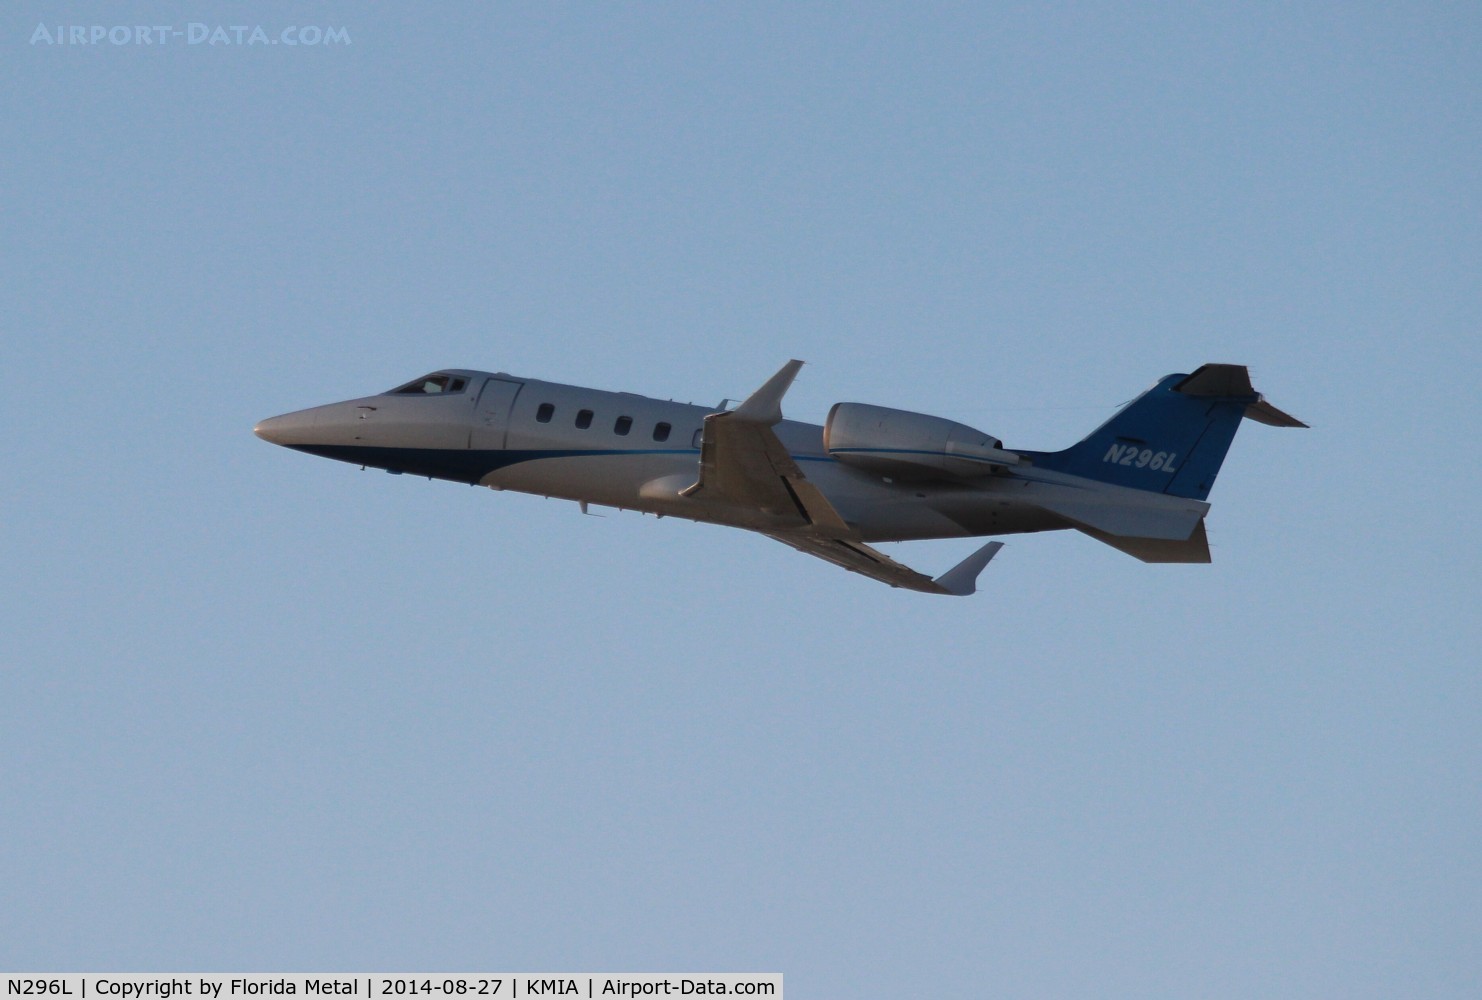 N296L, 2005 Learjet Inc 60 C/N 296, Lear 60 zx